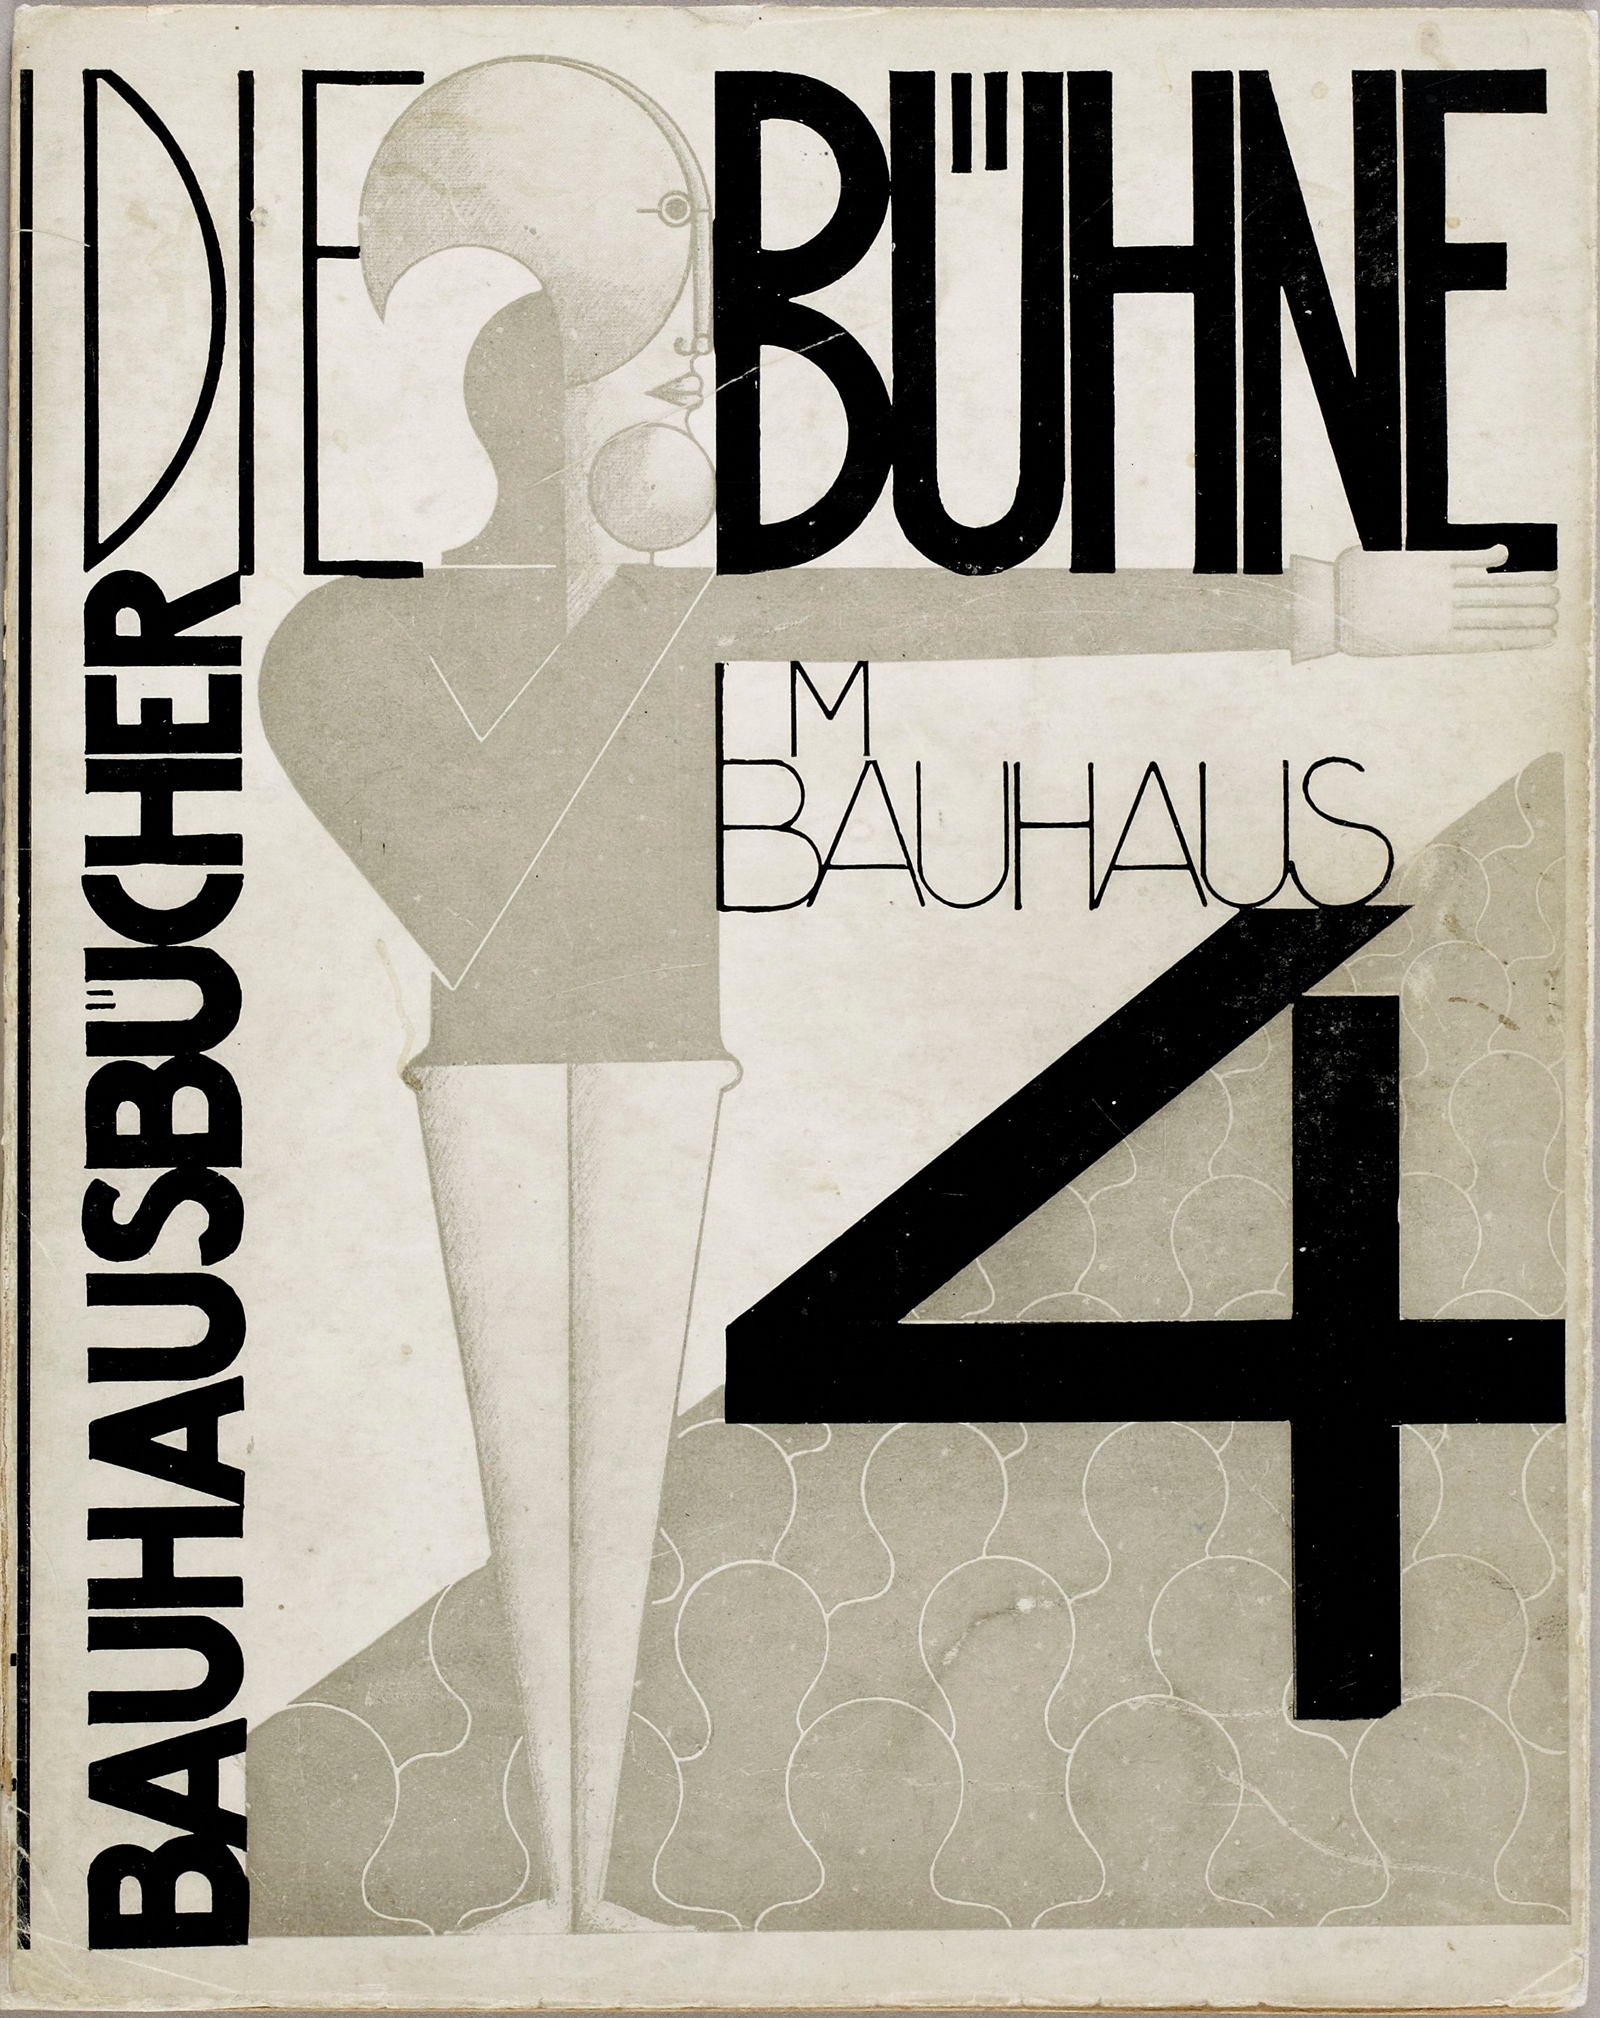 Die Bühne im Bauhaus. — München : Albert Langen Verlag, 1925. — 88 s., ill. — (Bauhausbücher 4)